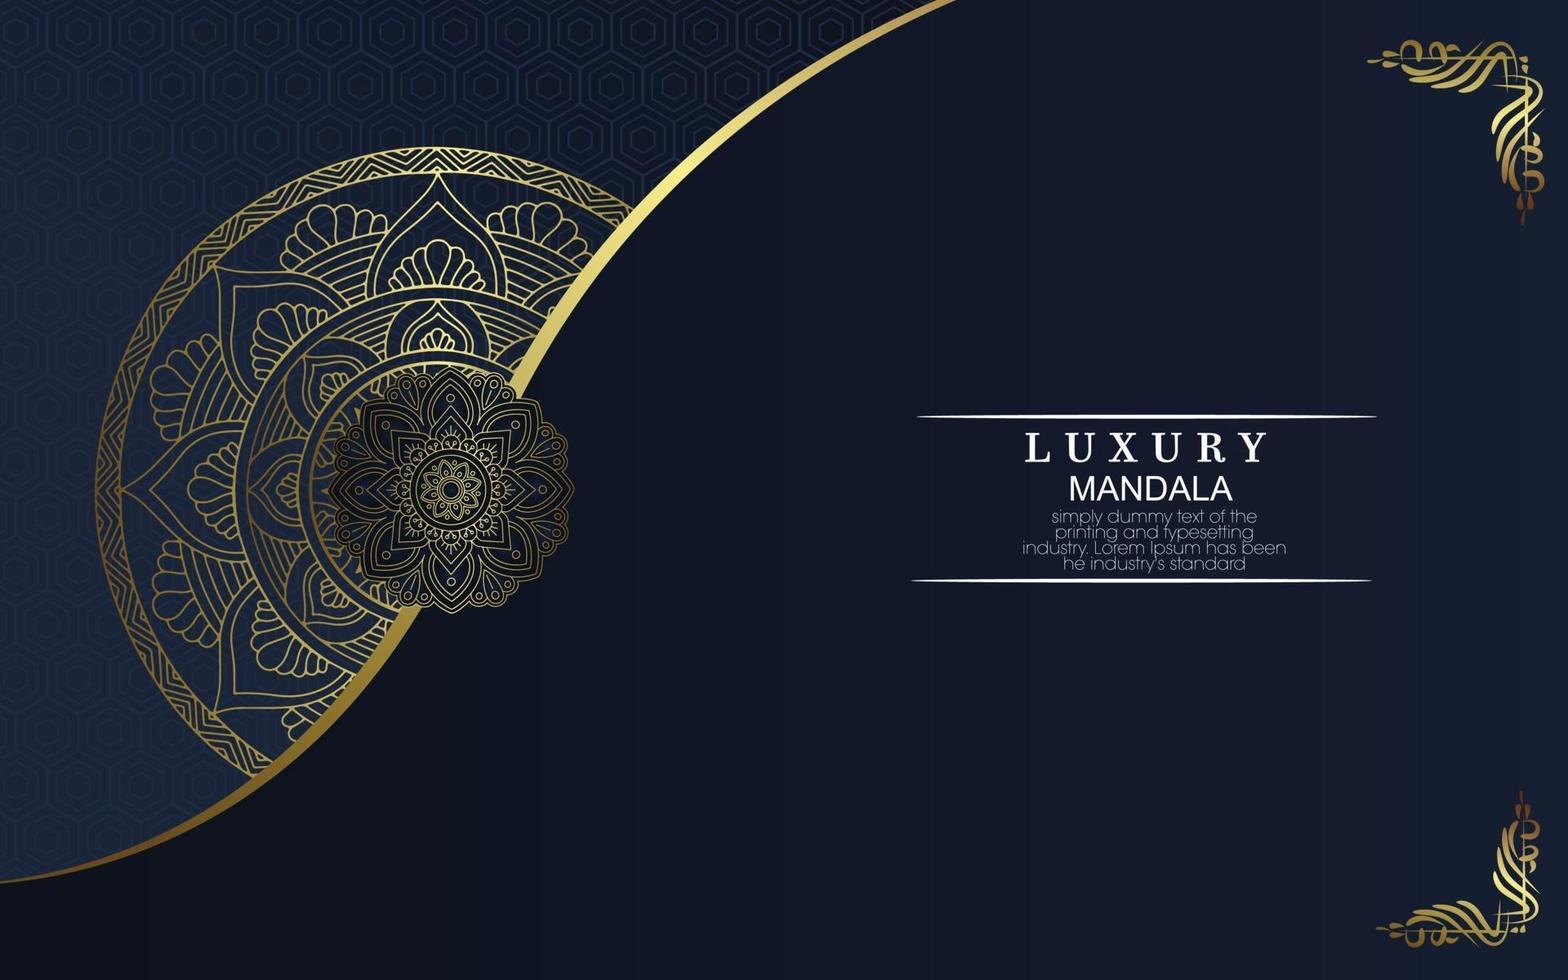 Luxus Gold Mandala verzierten Hintergrund vektor